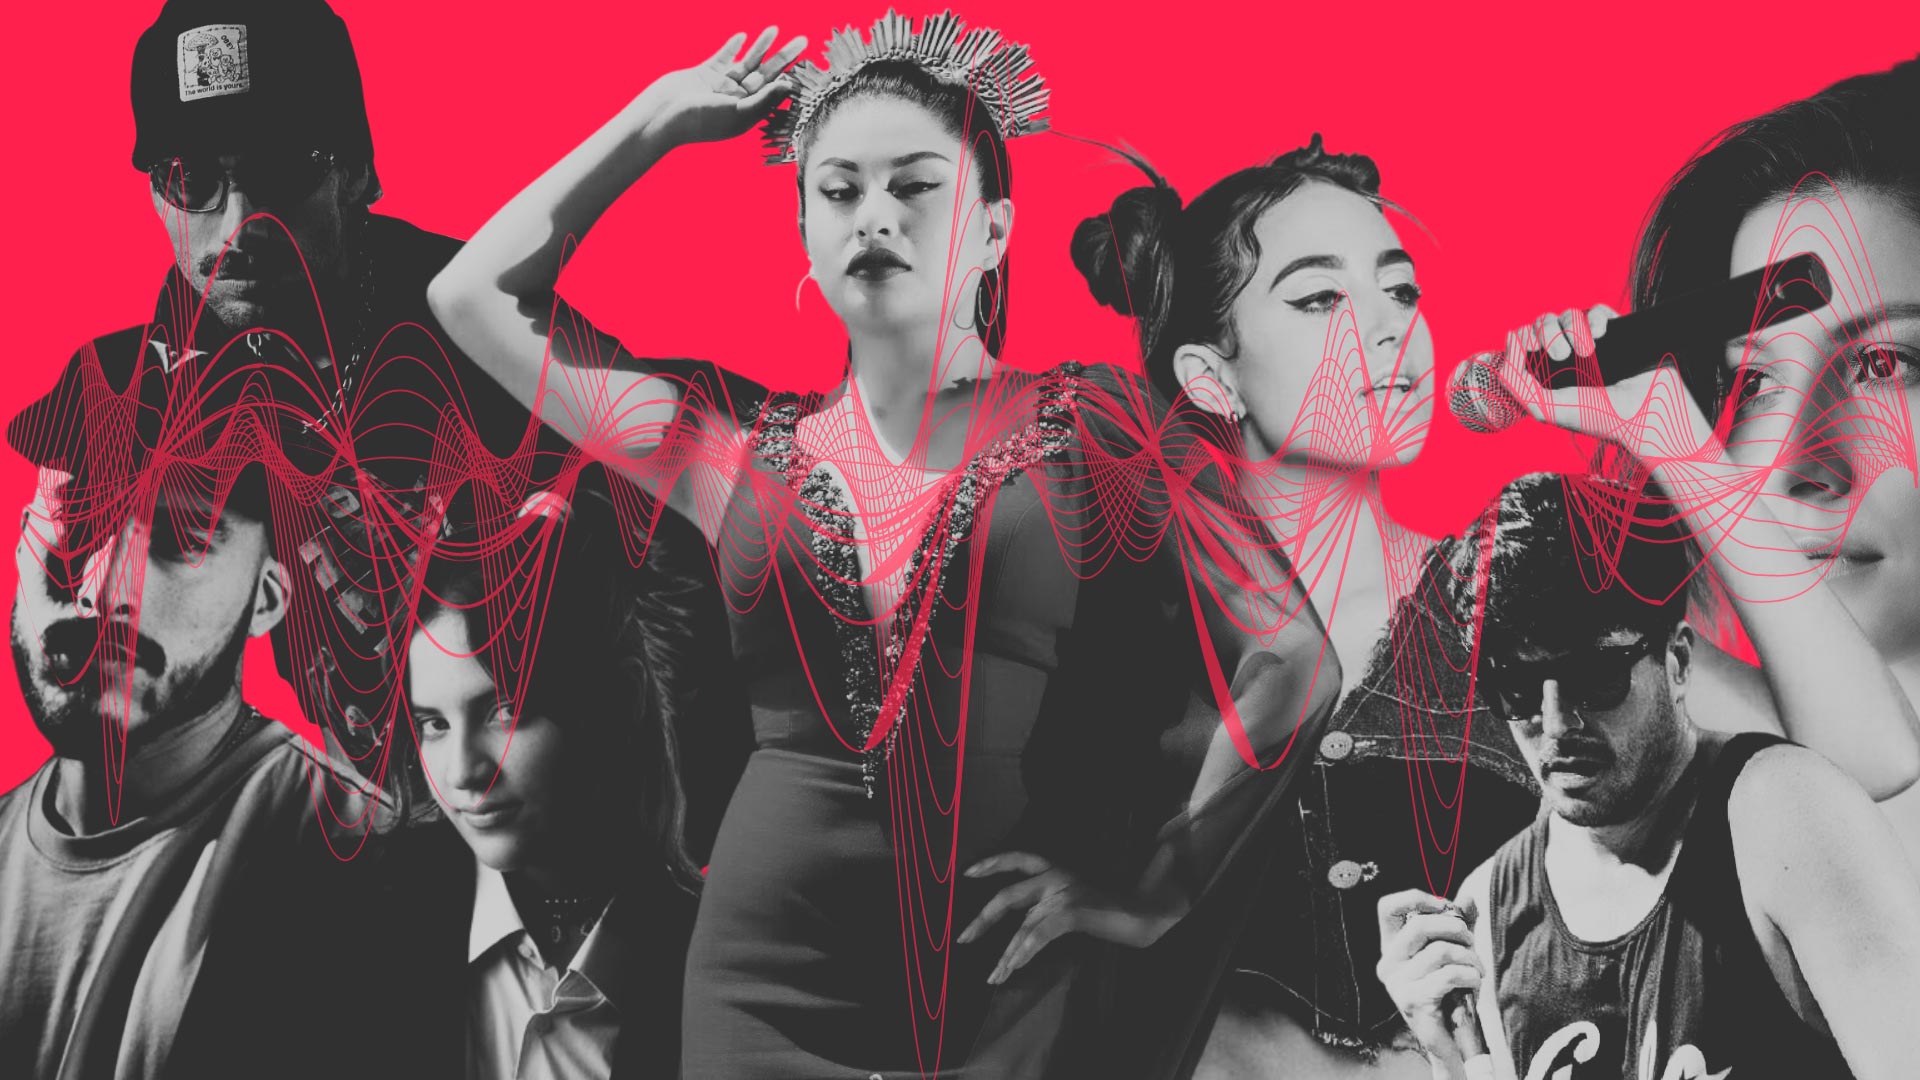 Wendy Sulca, Gala Brie y otros artistas peruanos en un collage con fondo rojo